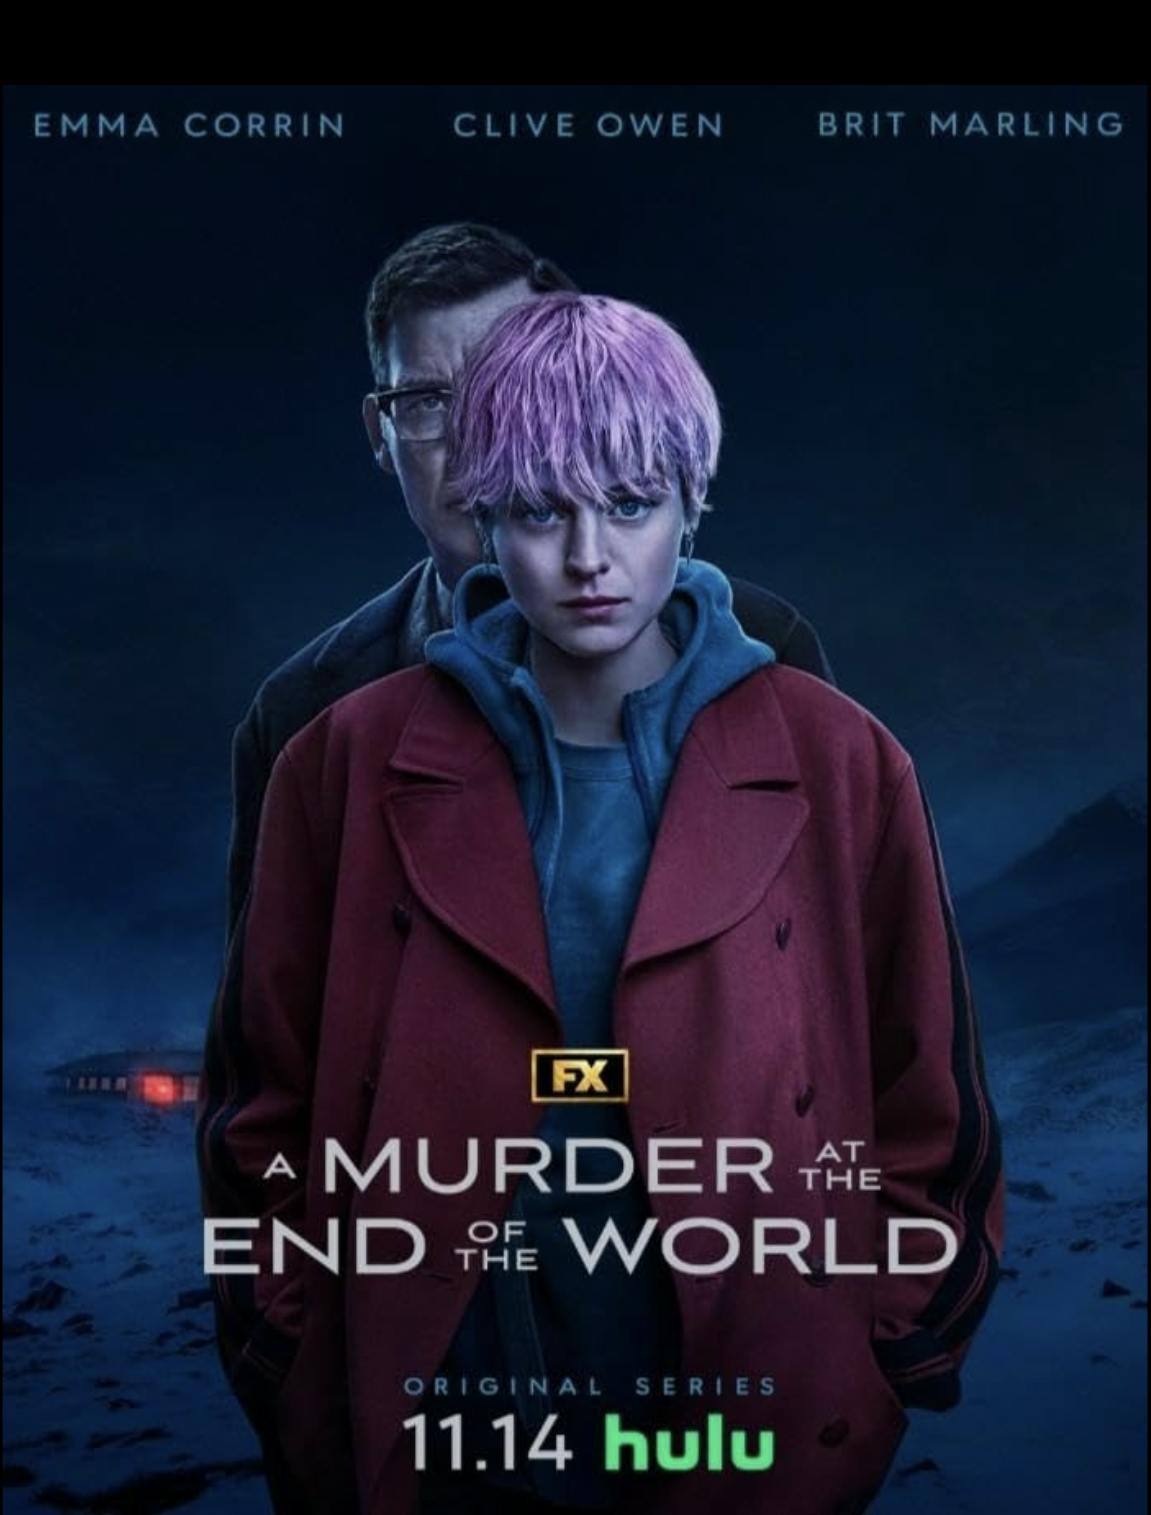 پوستر سریال «قتلی در انتهای جهان» از دیزنی / فاکس